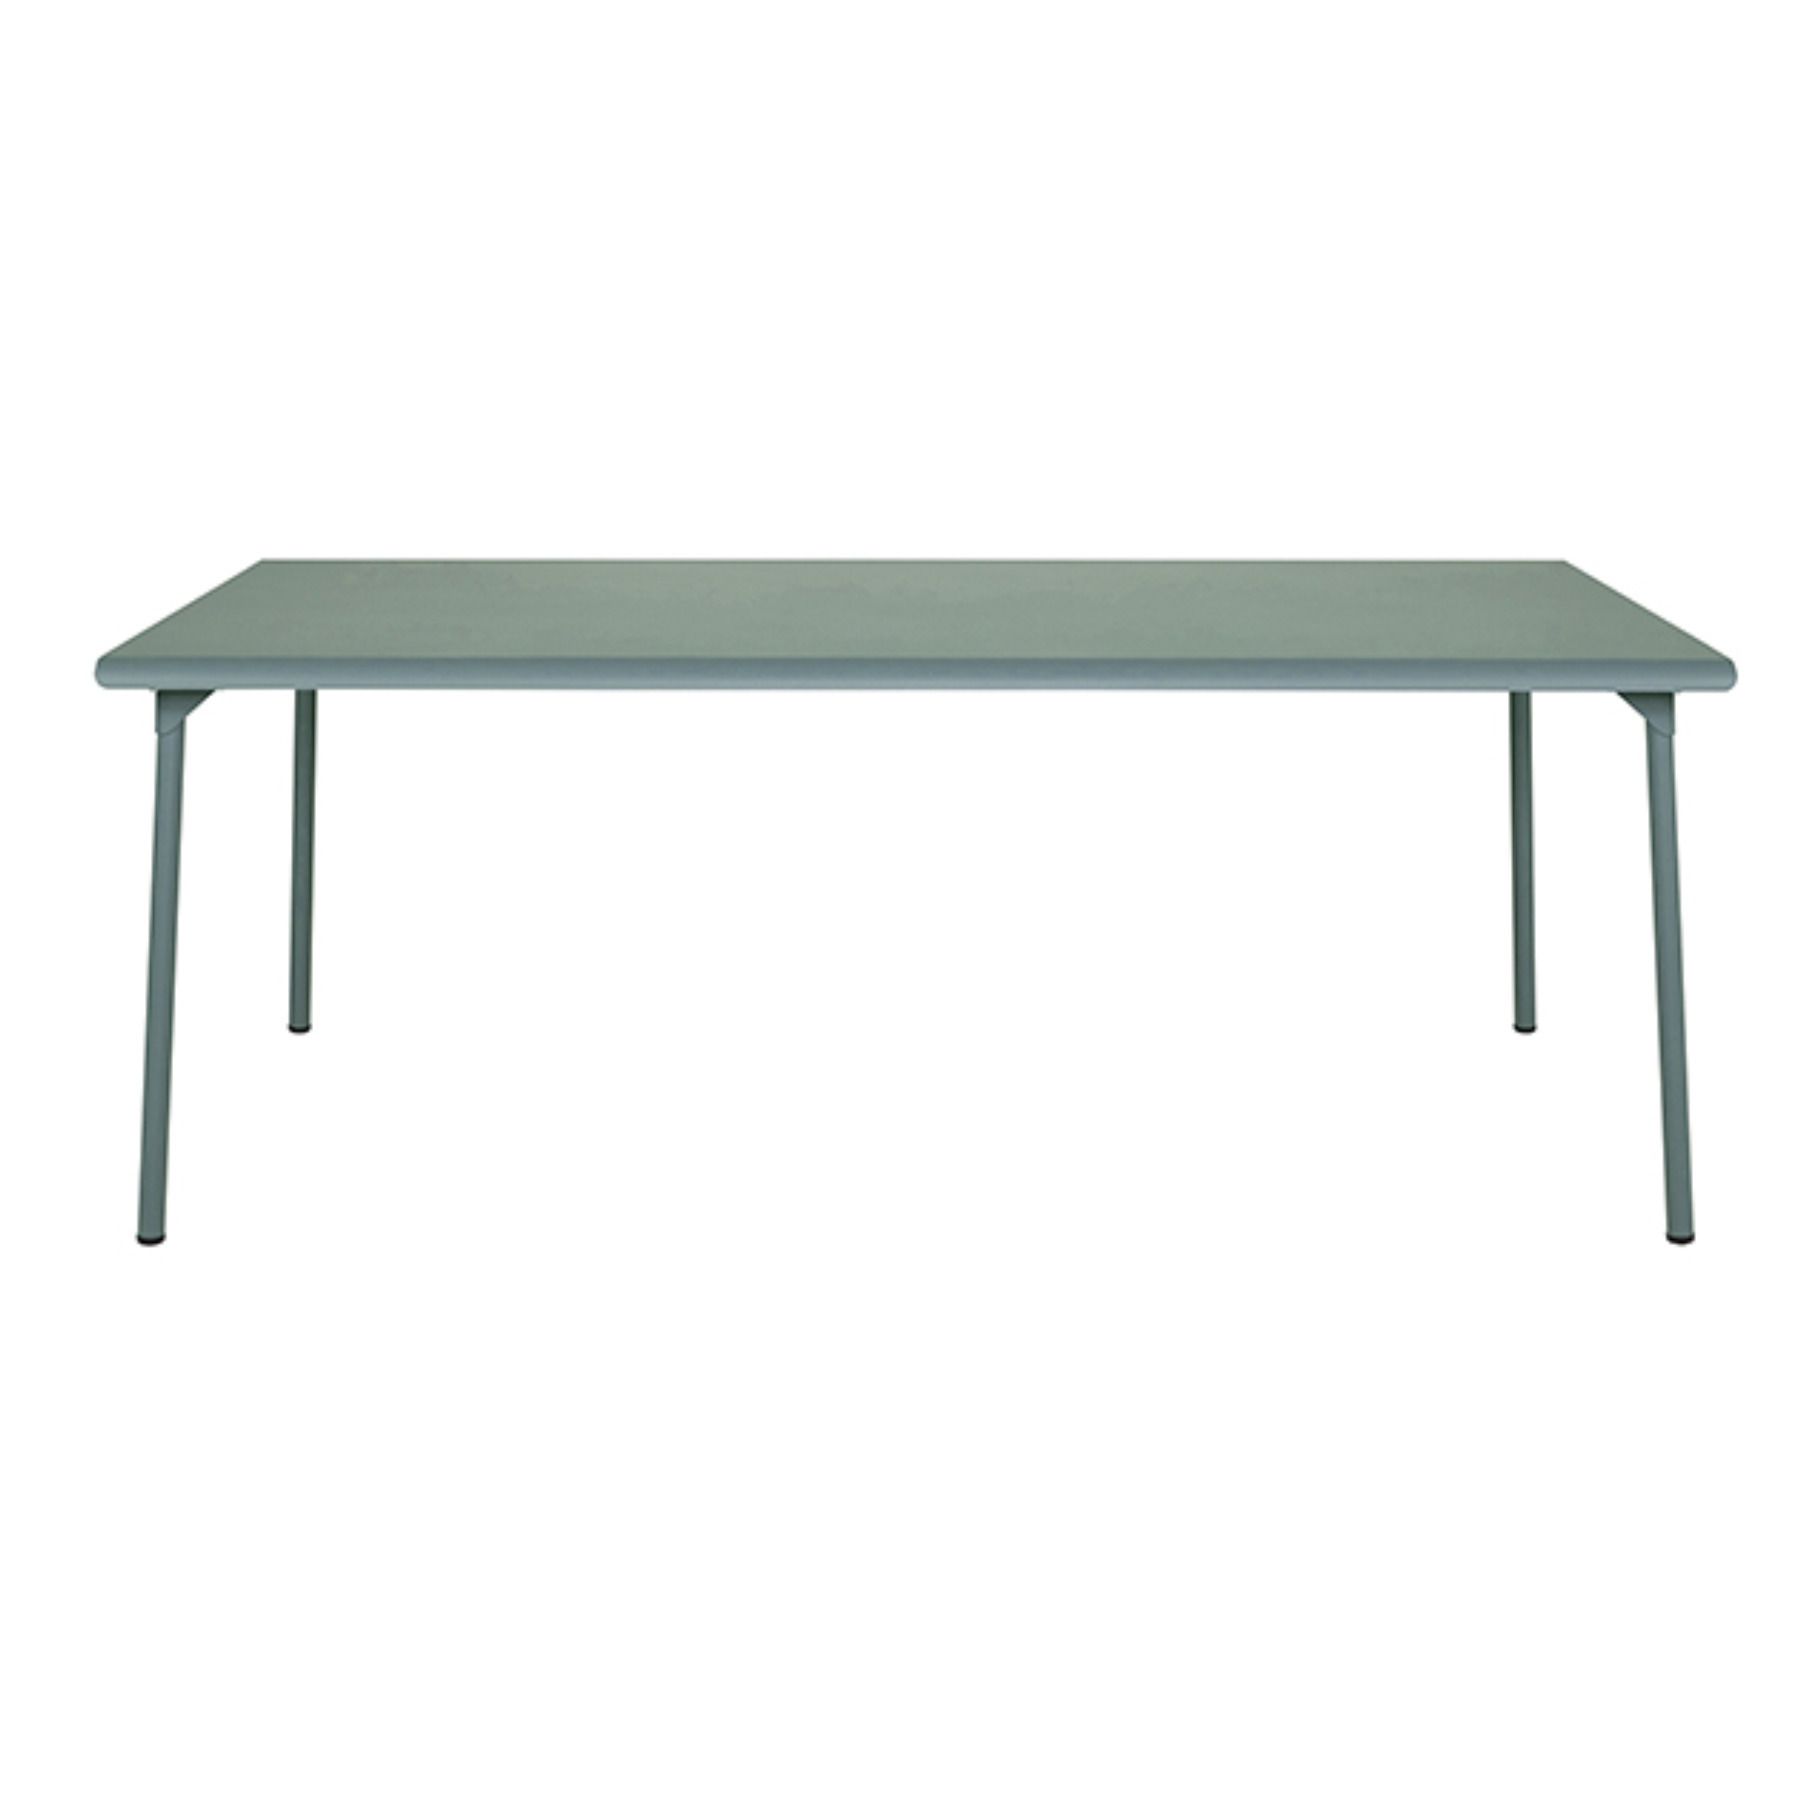 Tolix - Table outdoor Patio en inox - 200x100 cm - Vert Lichen